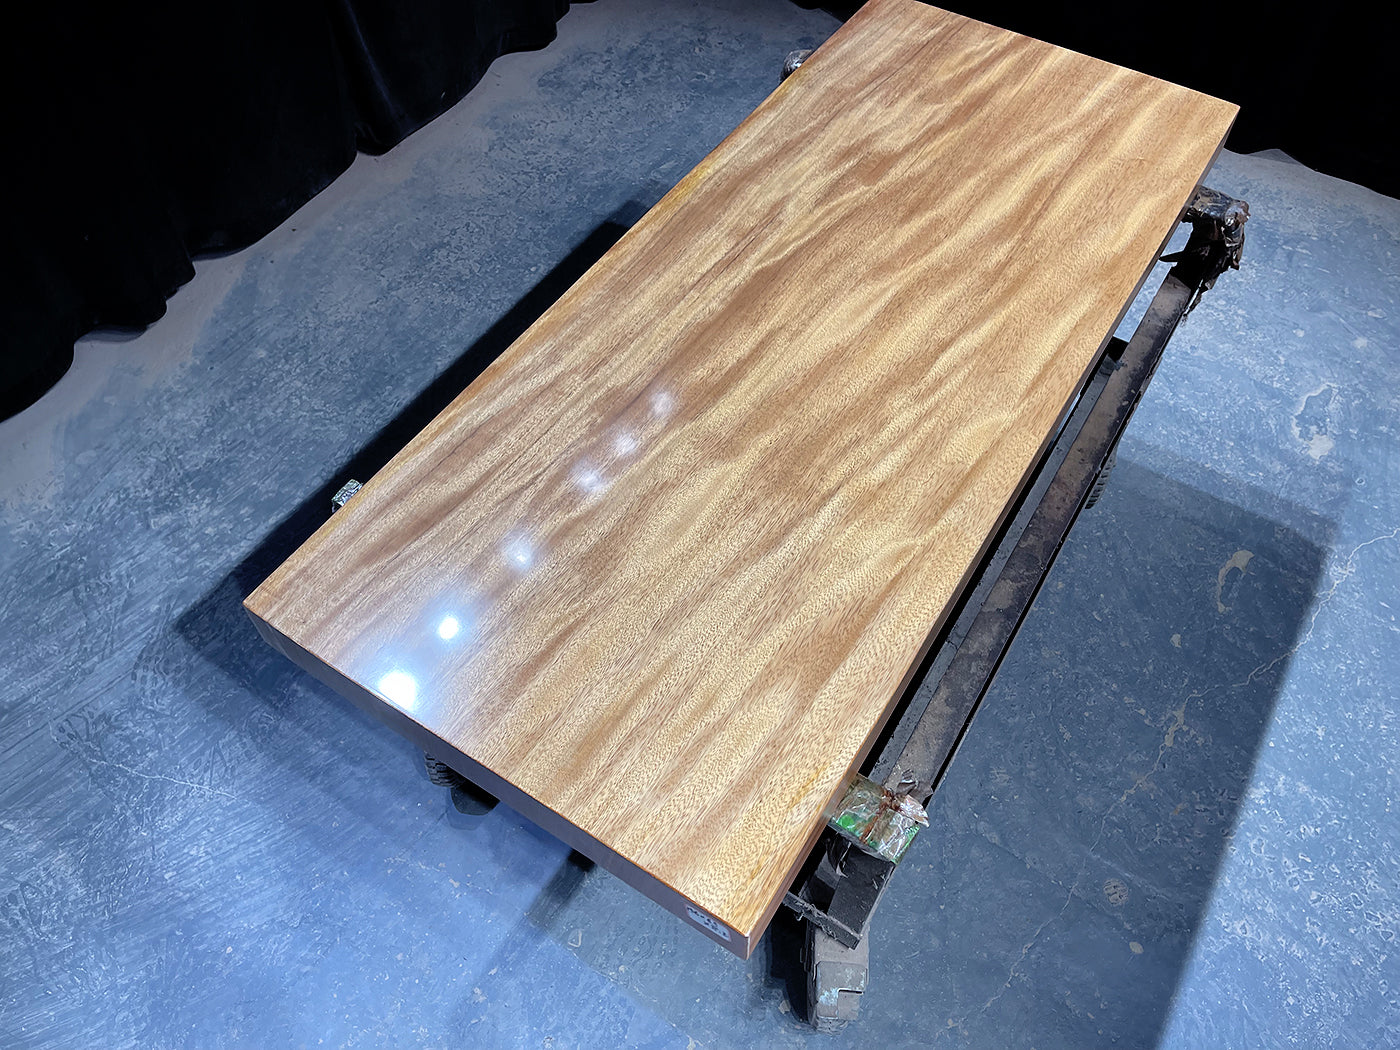 Terminalia table, Terminalia slab, Terminalia wood table, Terminalia timber